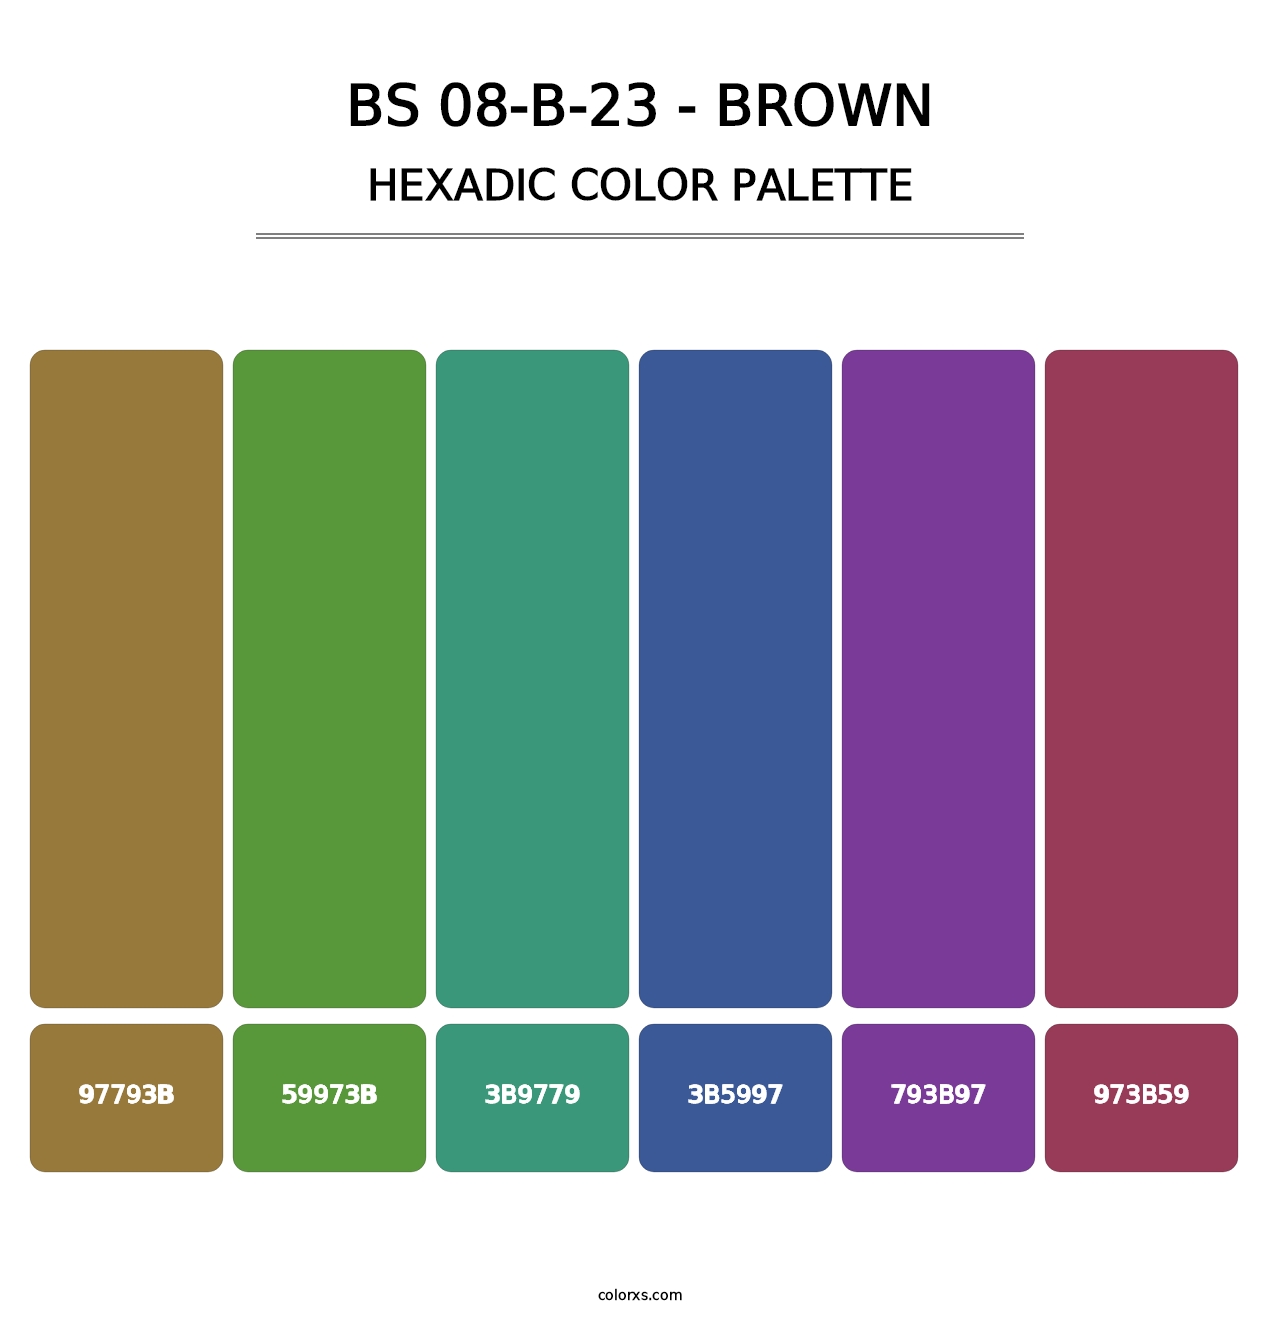 BS 08-B-23 - Brown - Hexadic Color Palette